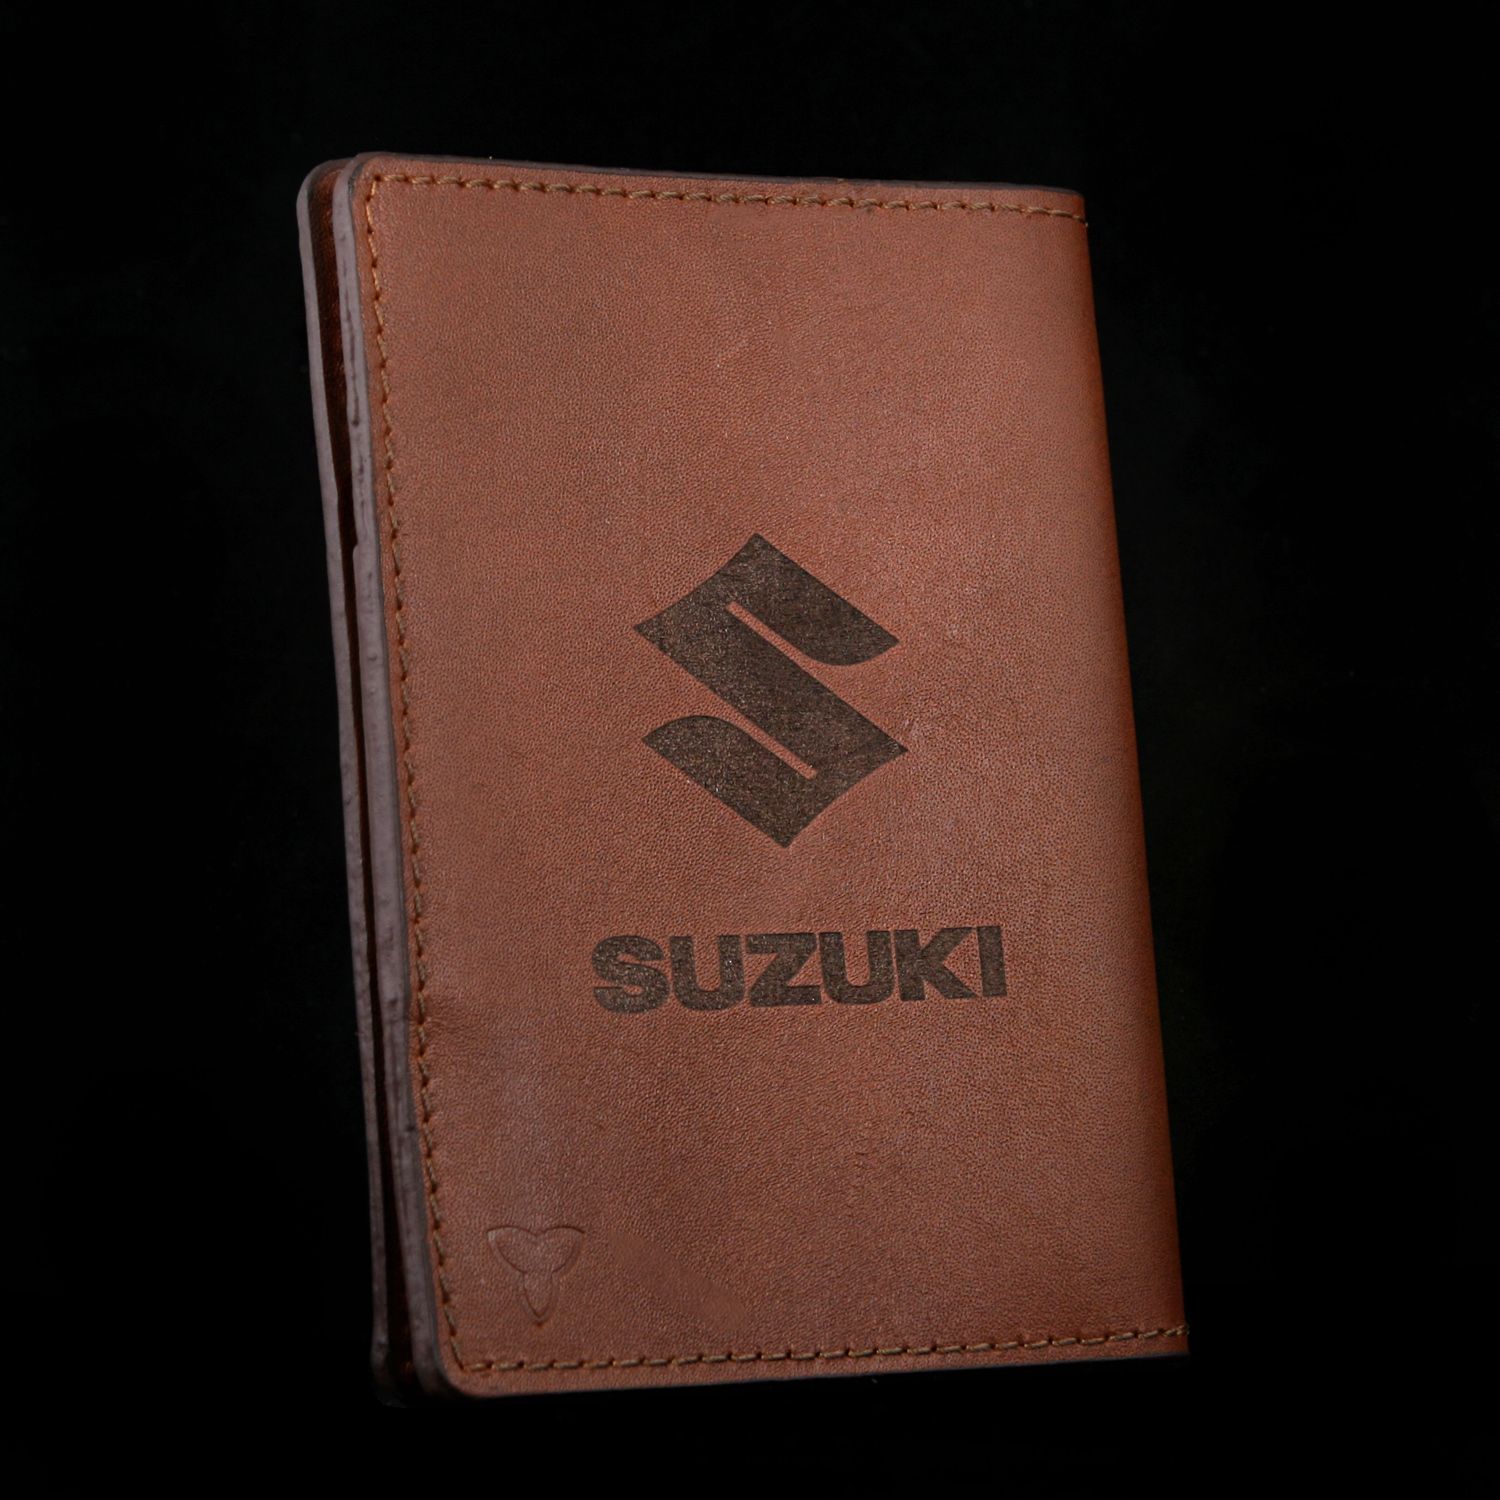 کیف مدارک چرم یلسان مدل SUZUKI کد KM-200-54-GS -  - 1